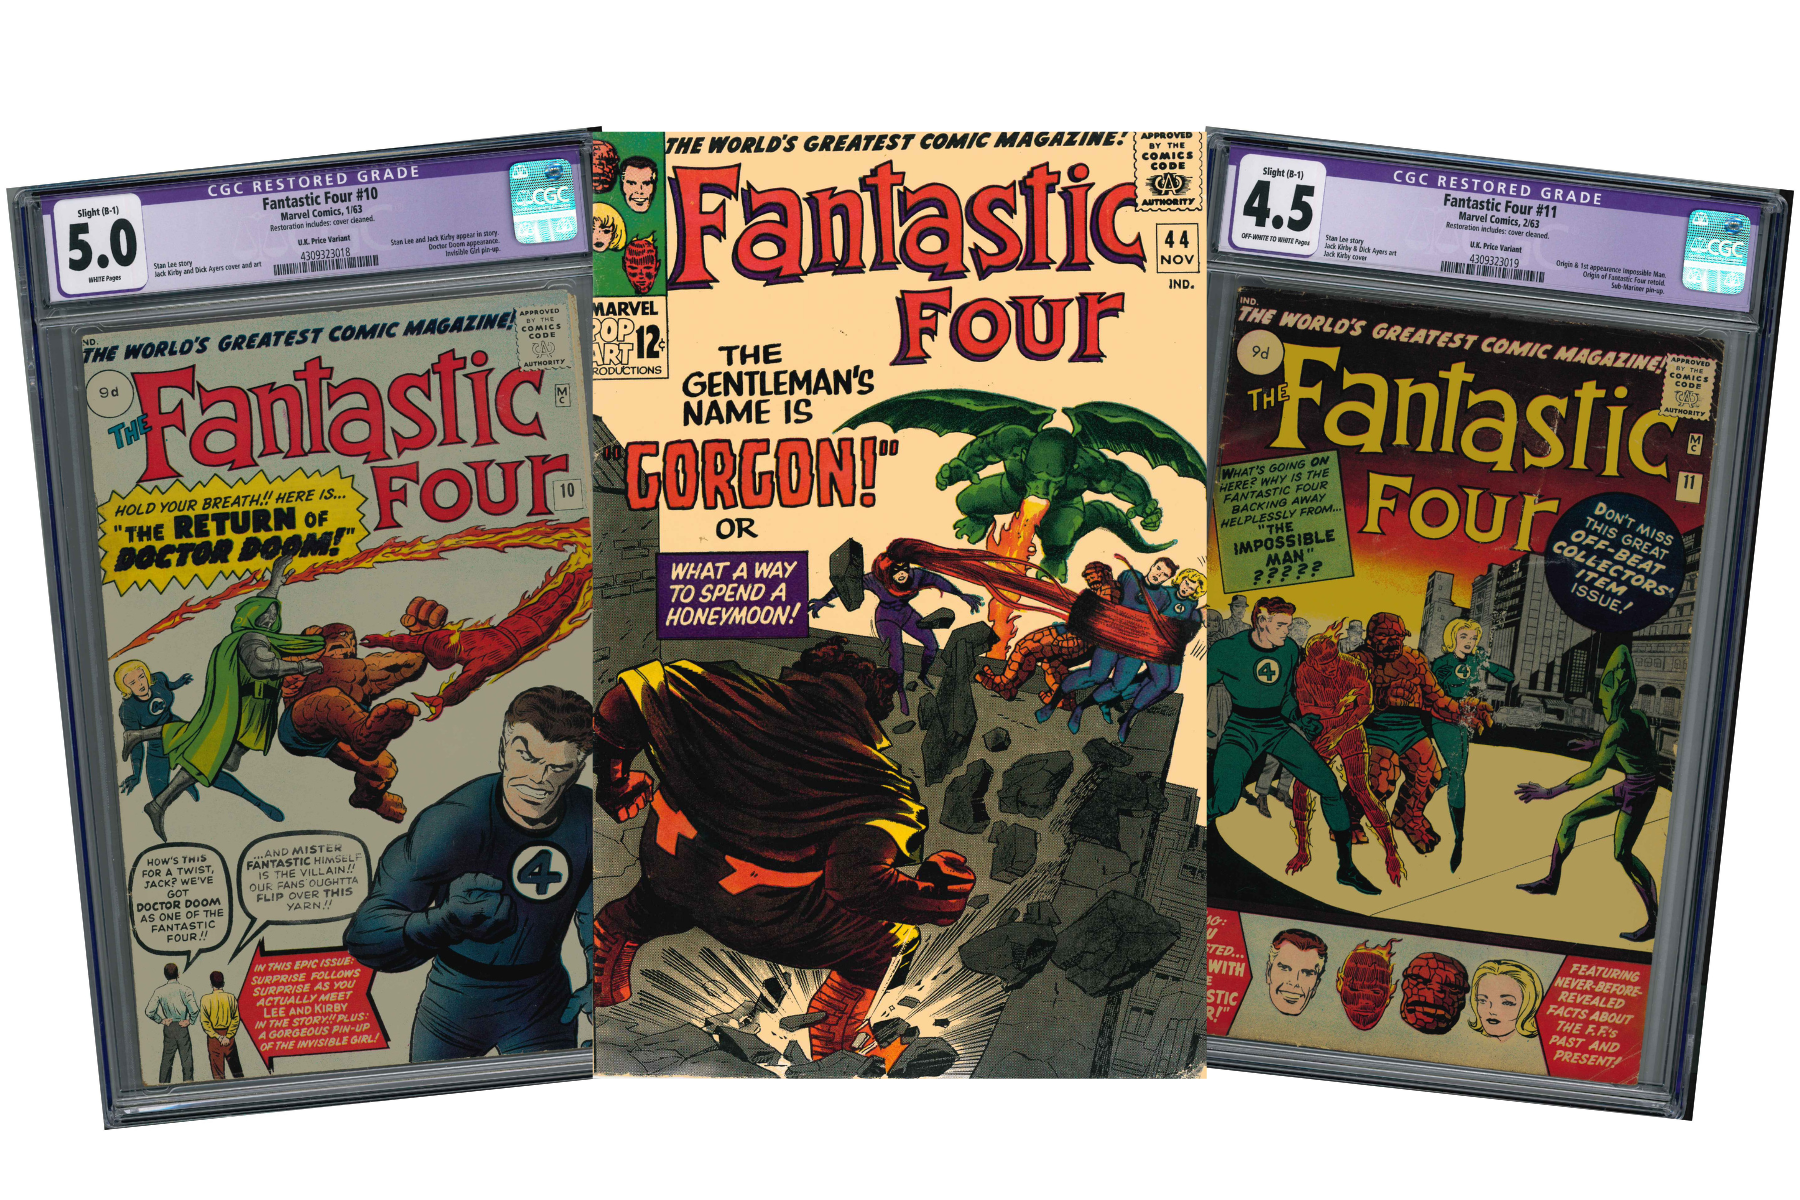 Fantastic Four #44, Fantastic Four #10, Fantastic Four #11